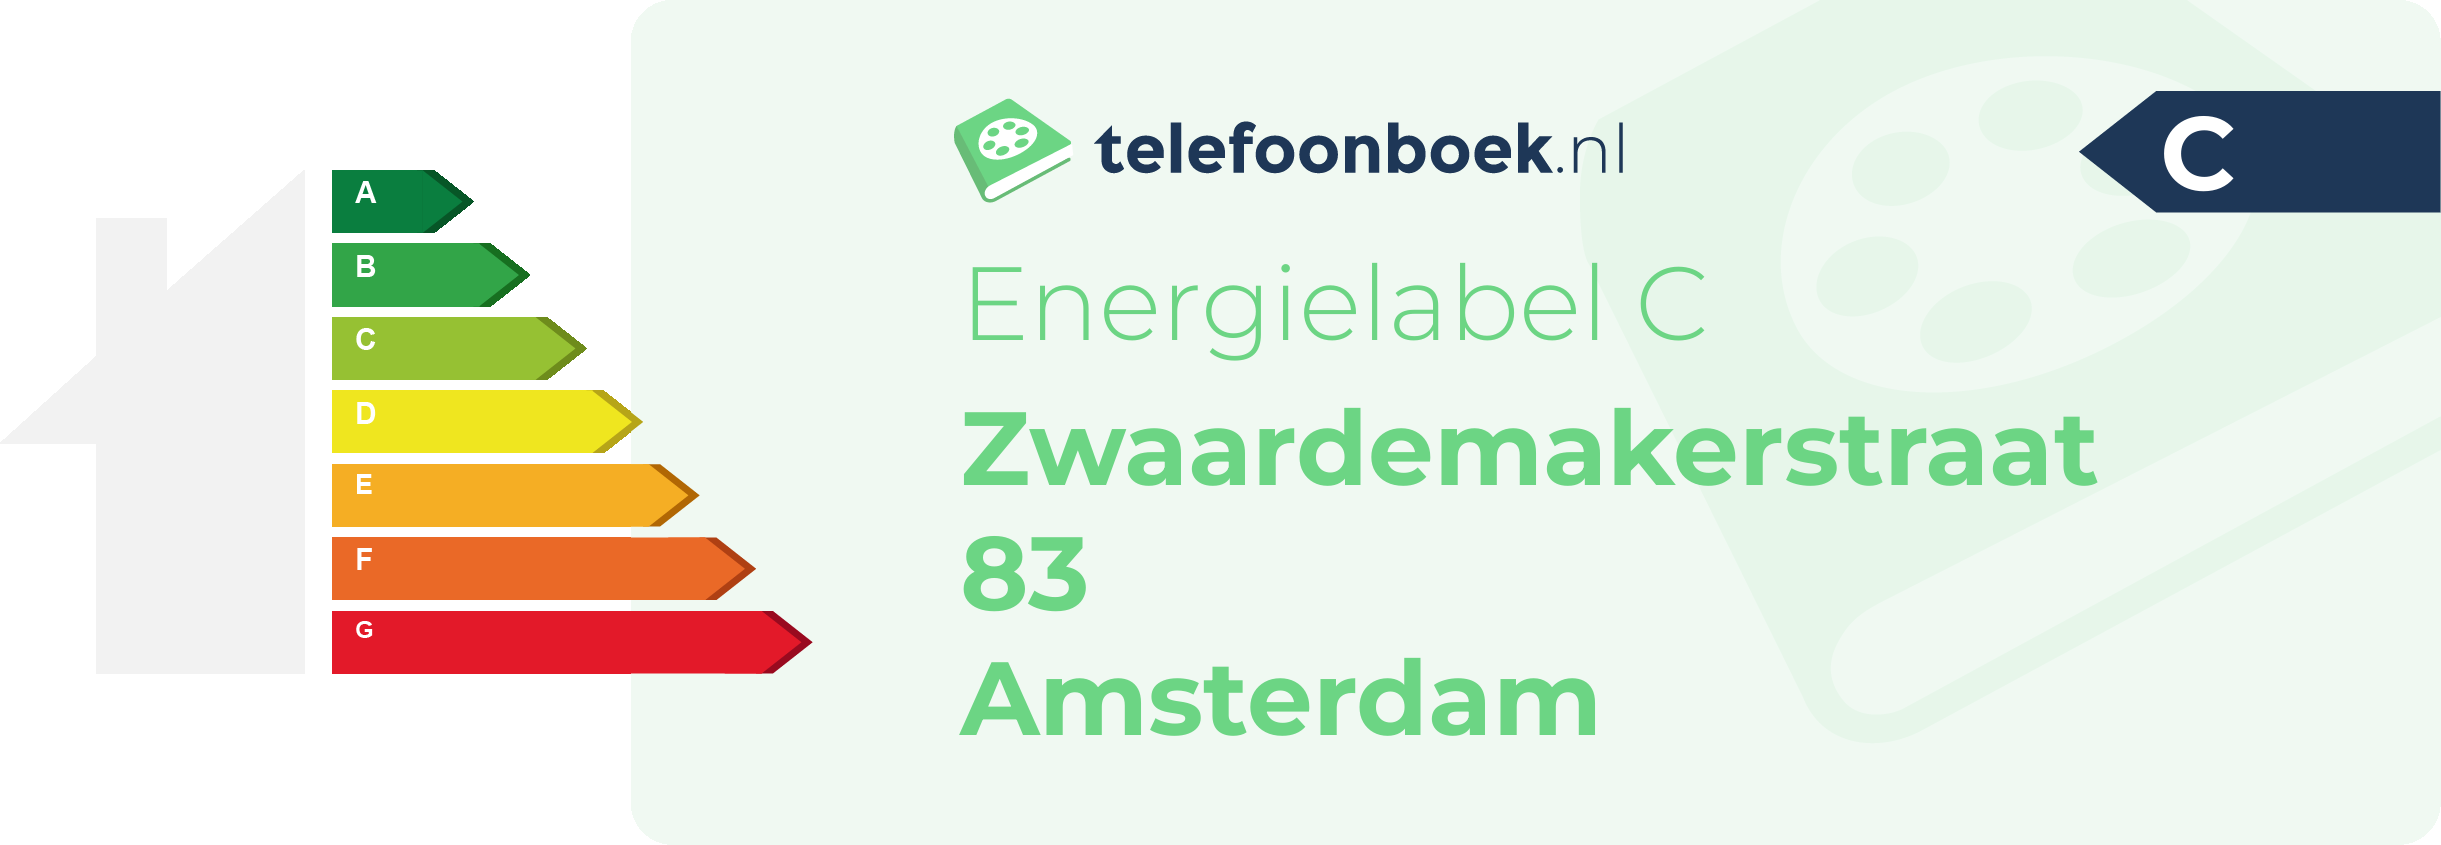 Energielabel Zwaardemakerstraat 83 Amsterdam